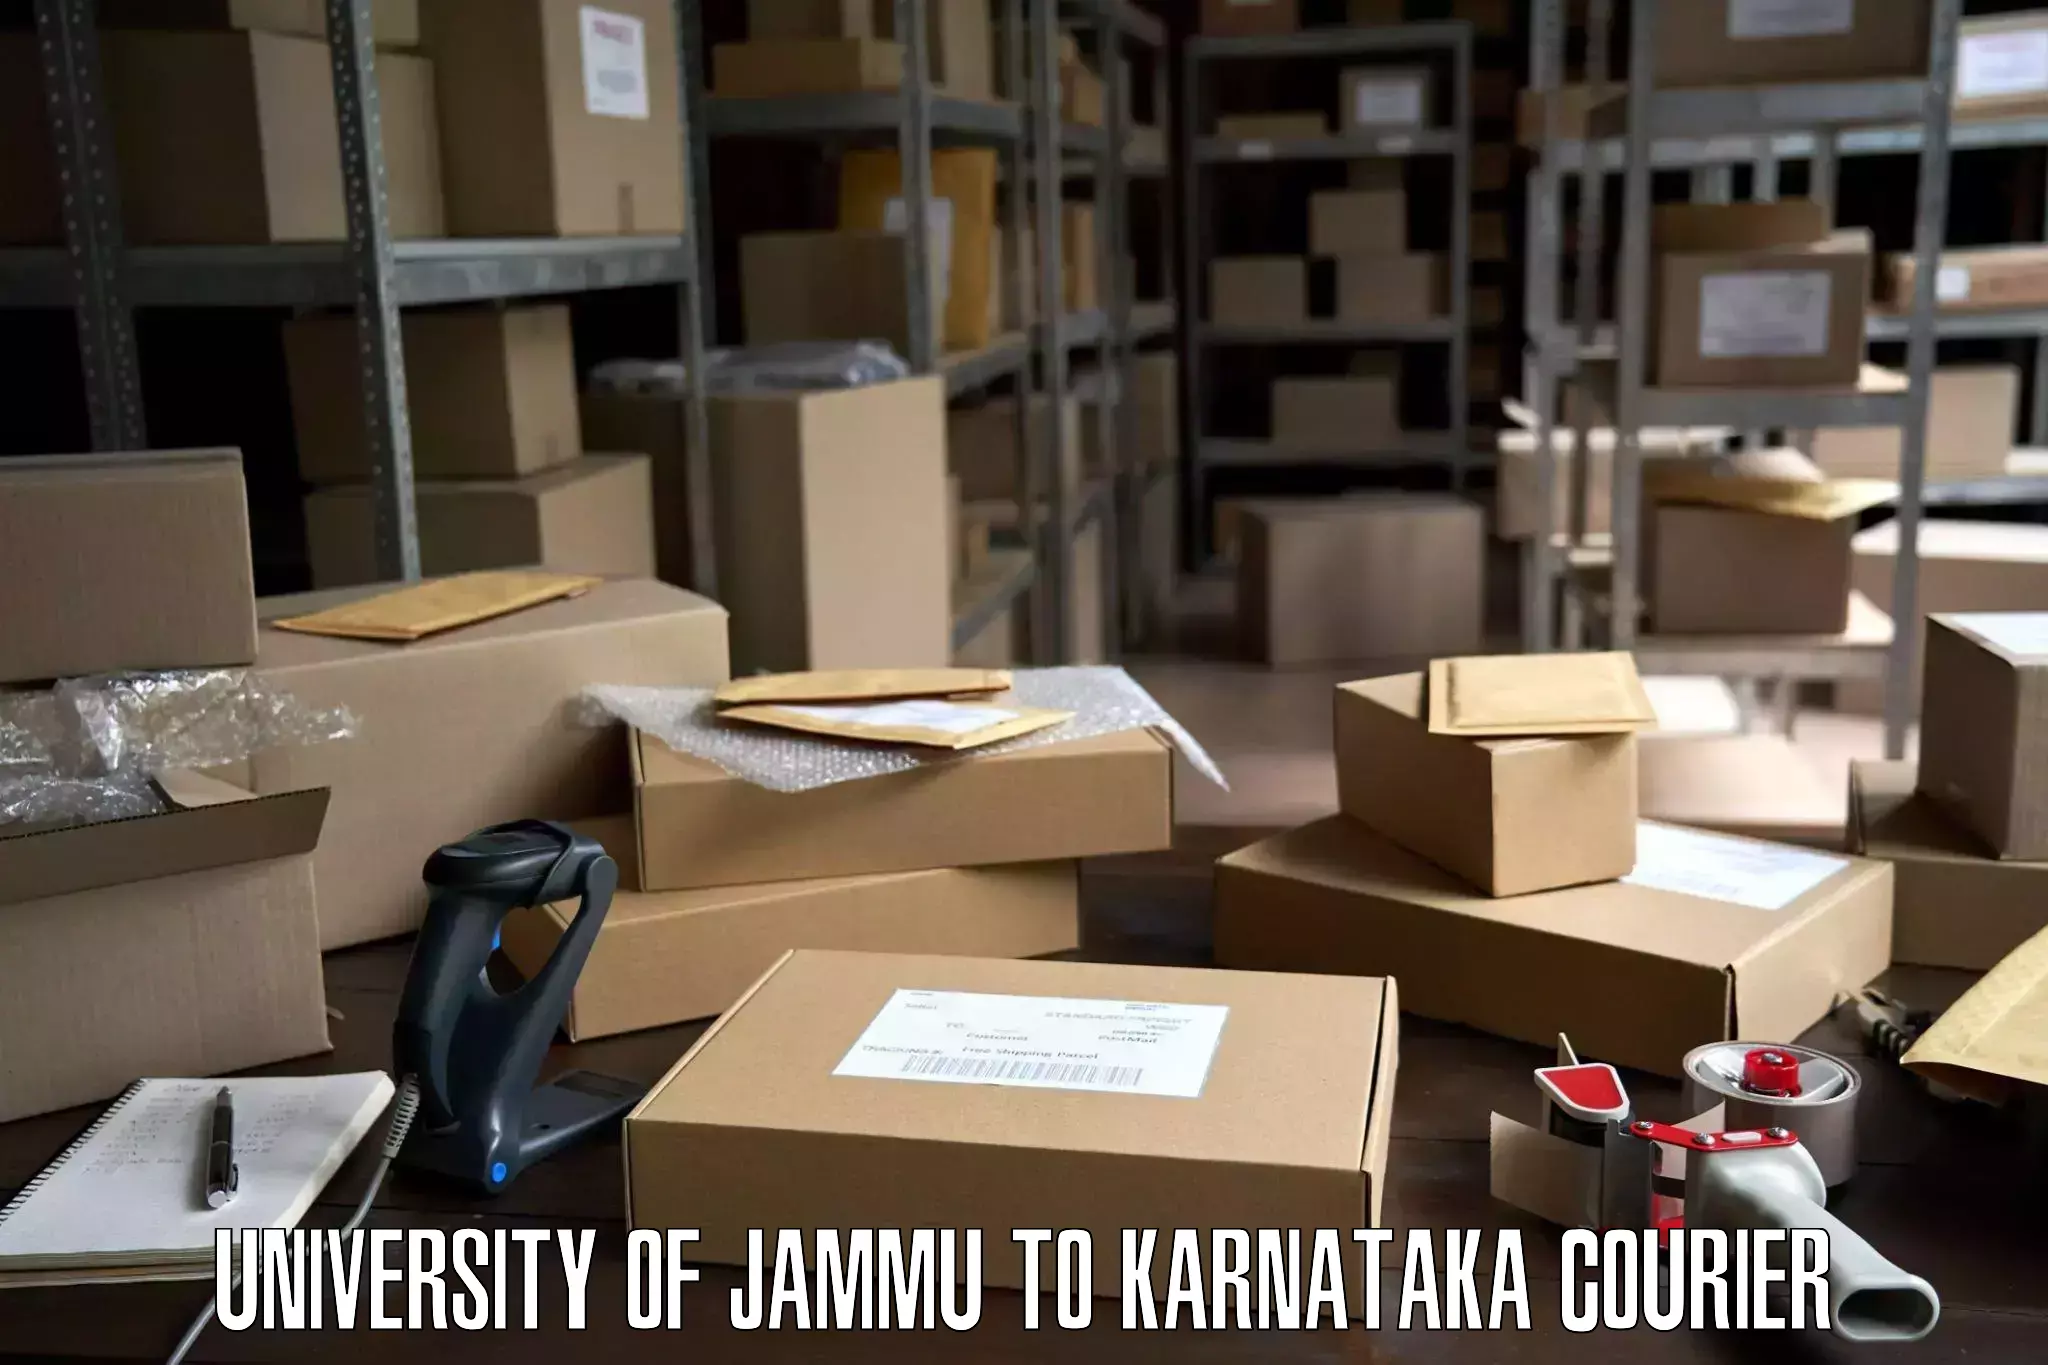 Expert goods movers University of Jammu to IIT Dharwad